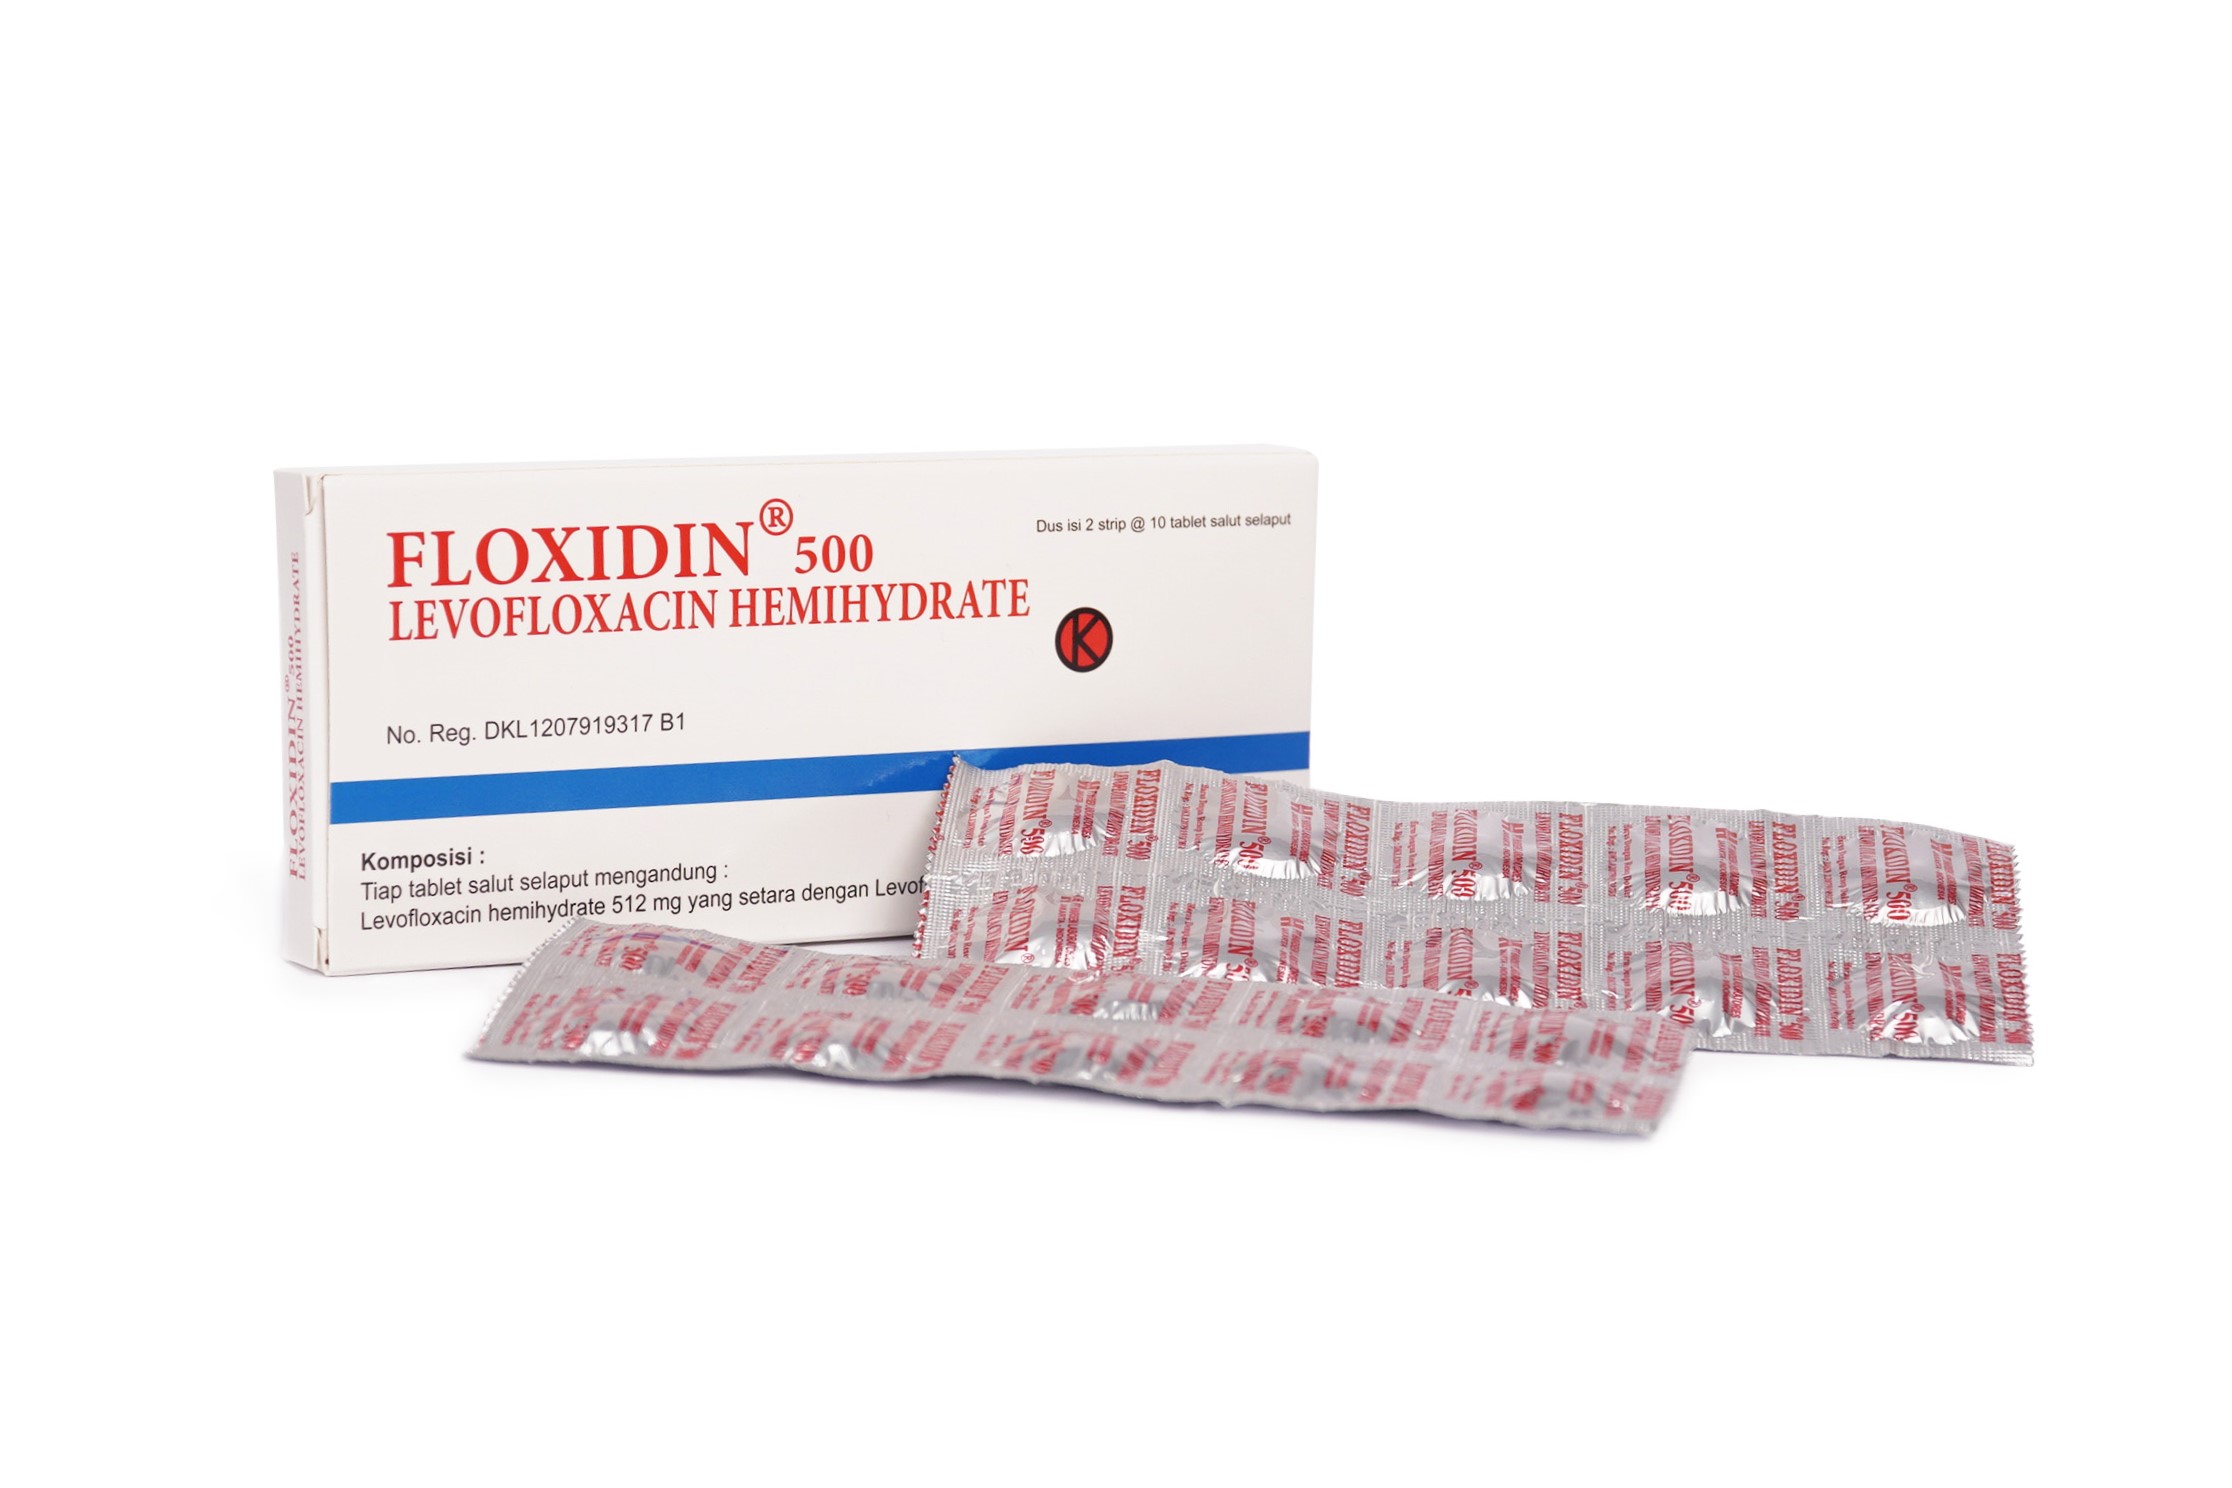 Floxidin 500